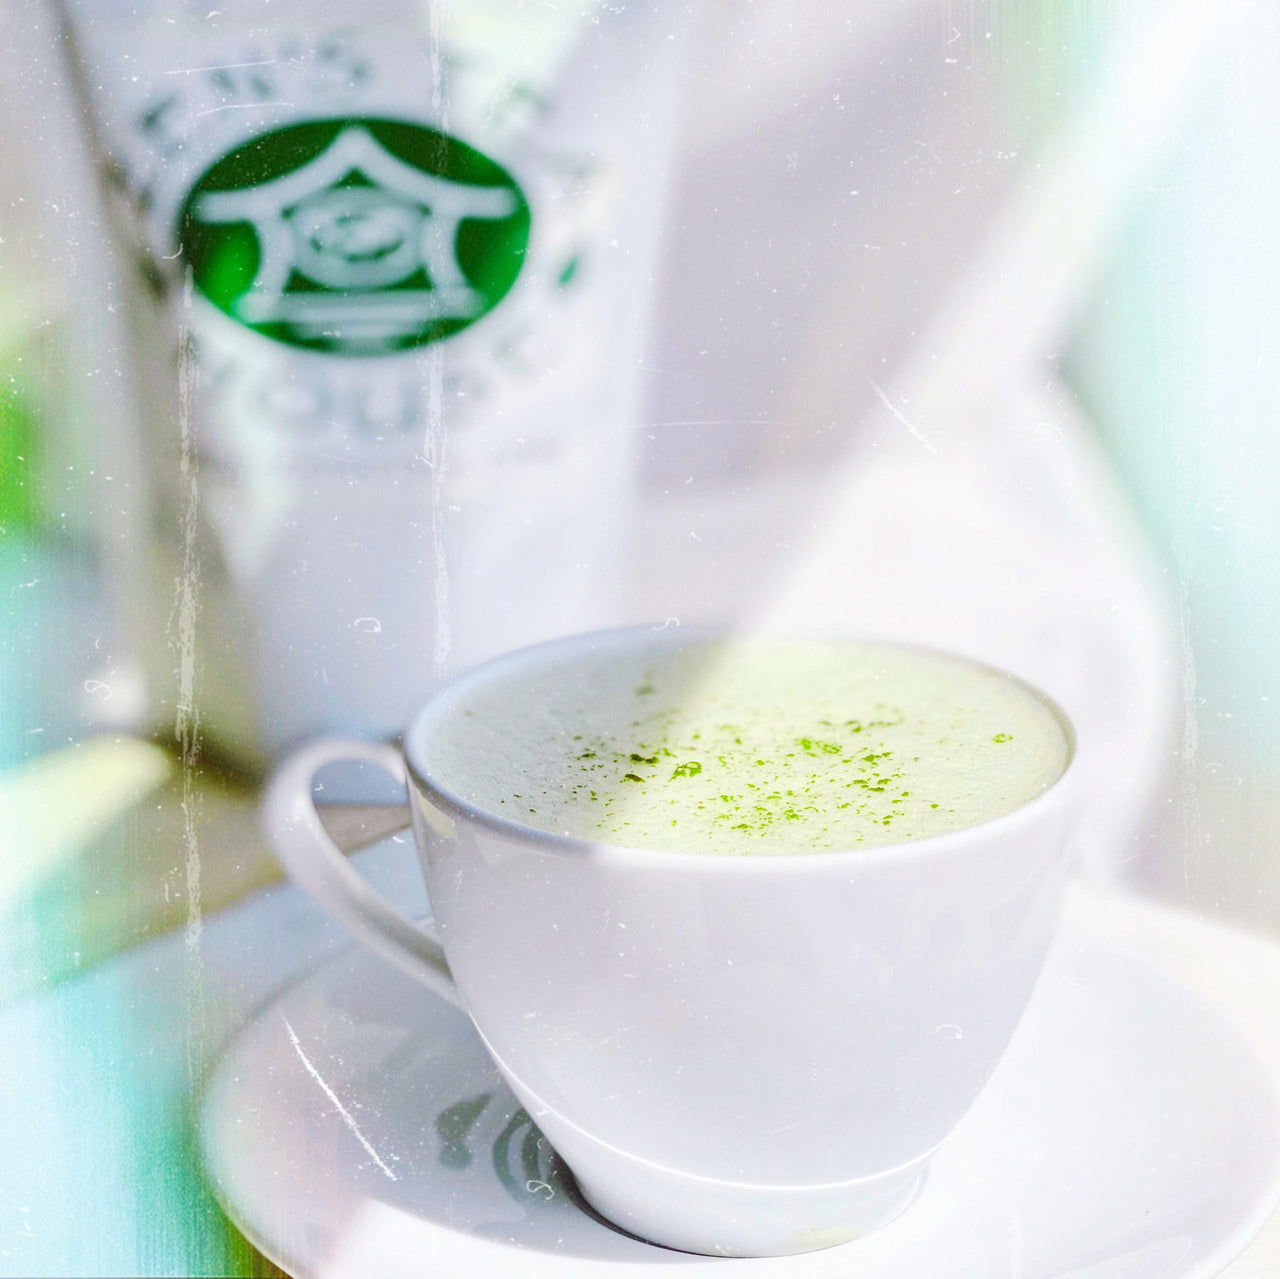 Collagen Matcha Green Tea